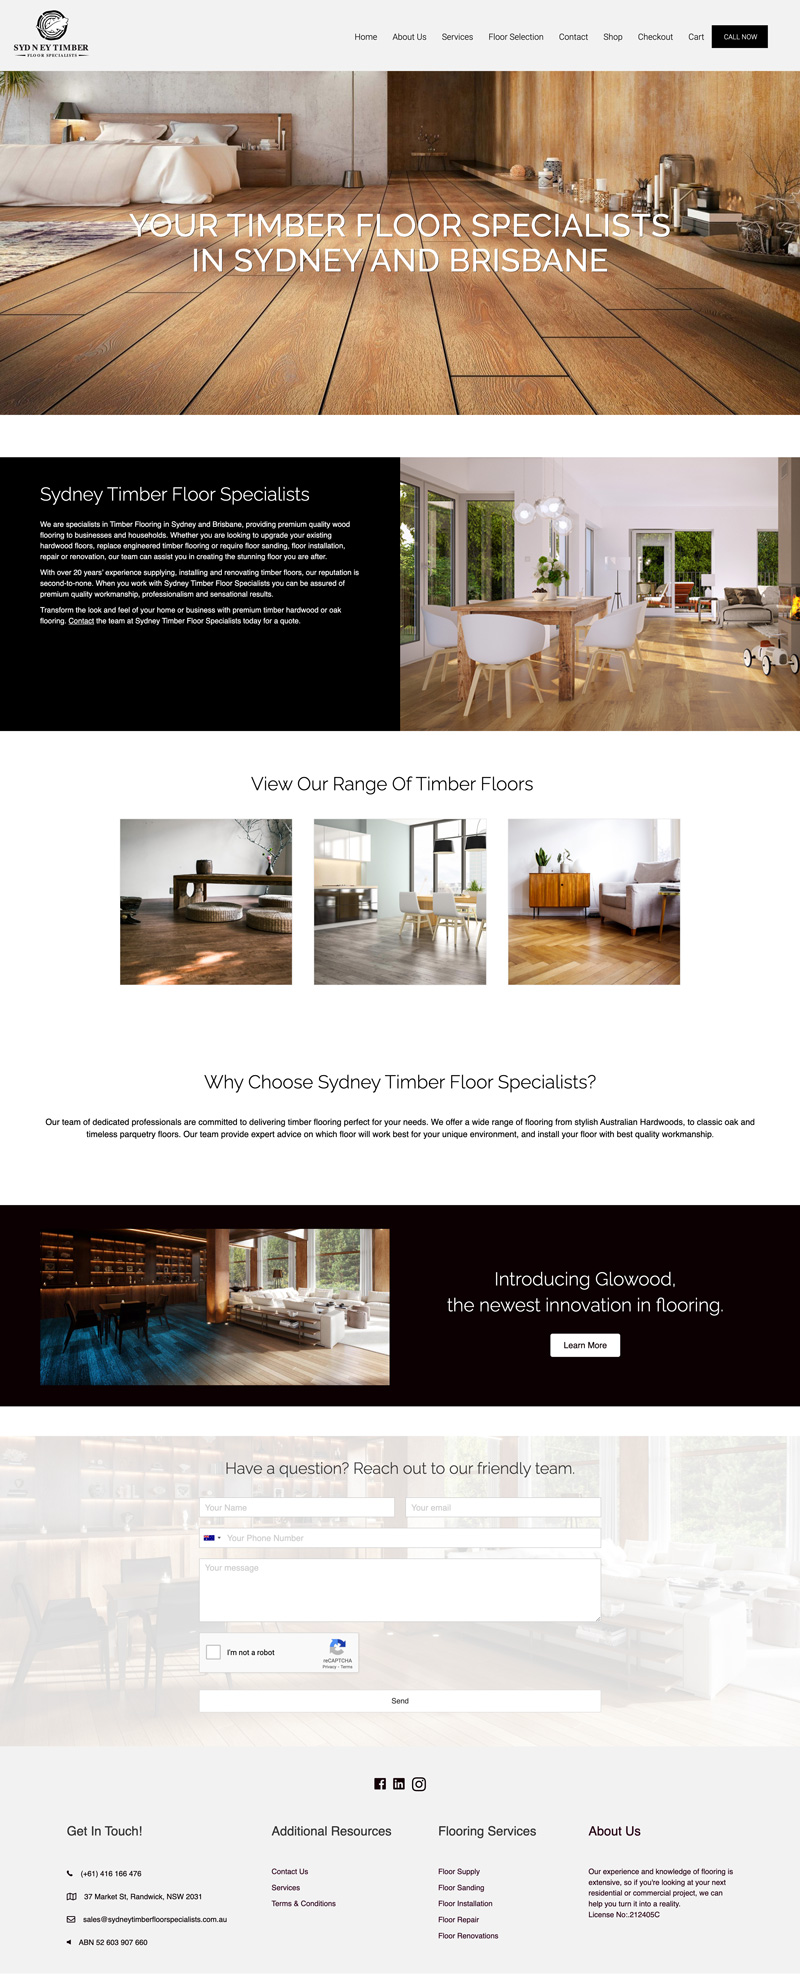 Sydney Timber Floor Specialists website design